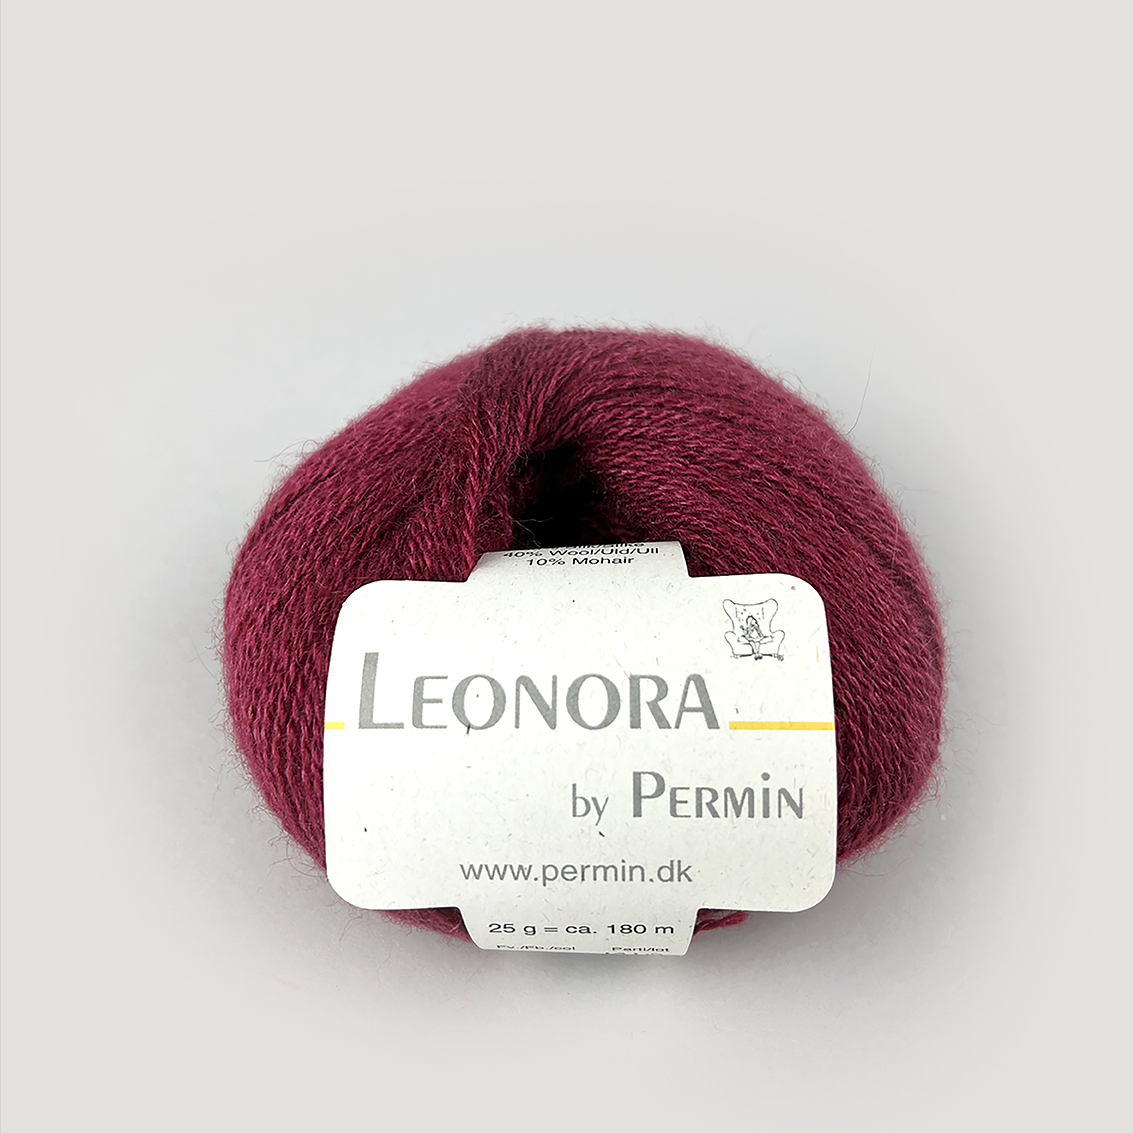 Leonora | by Permin